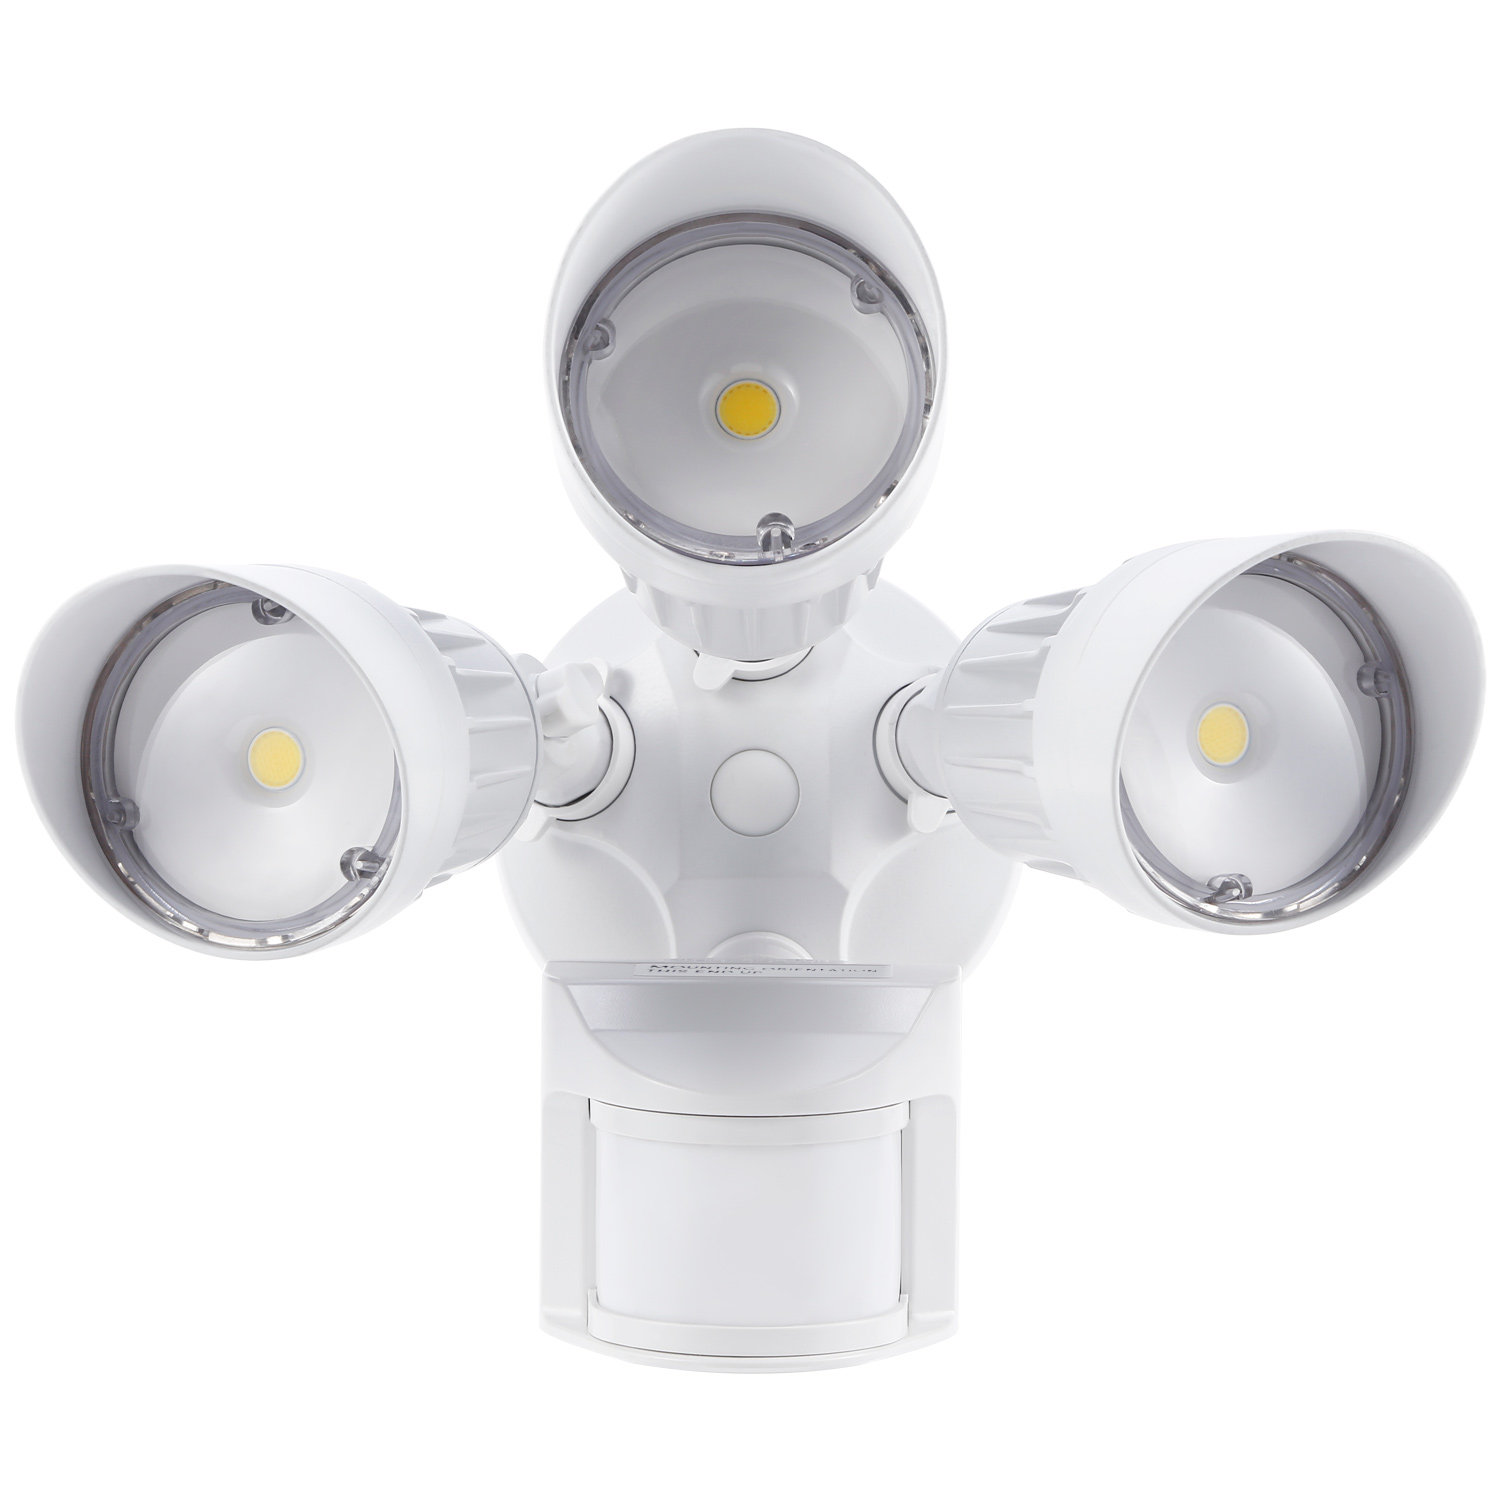 https://assets.wfcdn.com/im/60668095/compr-r85/2026/202690734/led-security-lights-motion-sensor-adjustable-3-heads-outdoor-flood-light-30w180w-equiv-3000k-warm-white.jpg